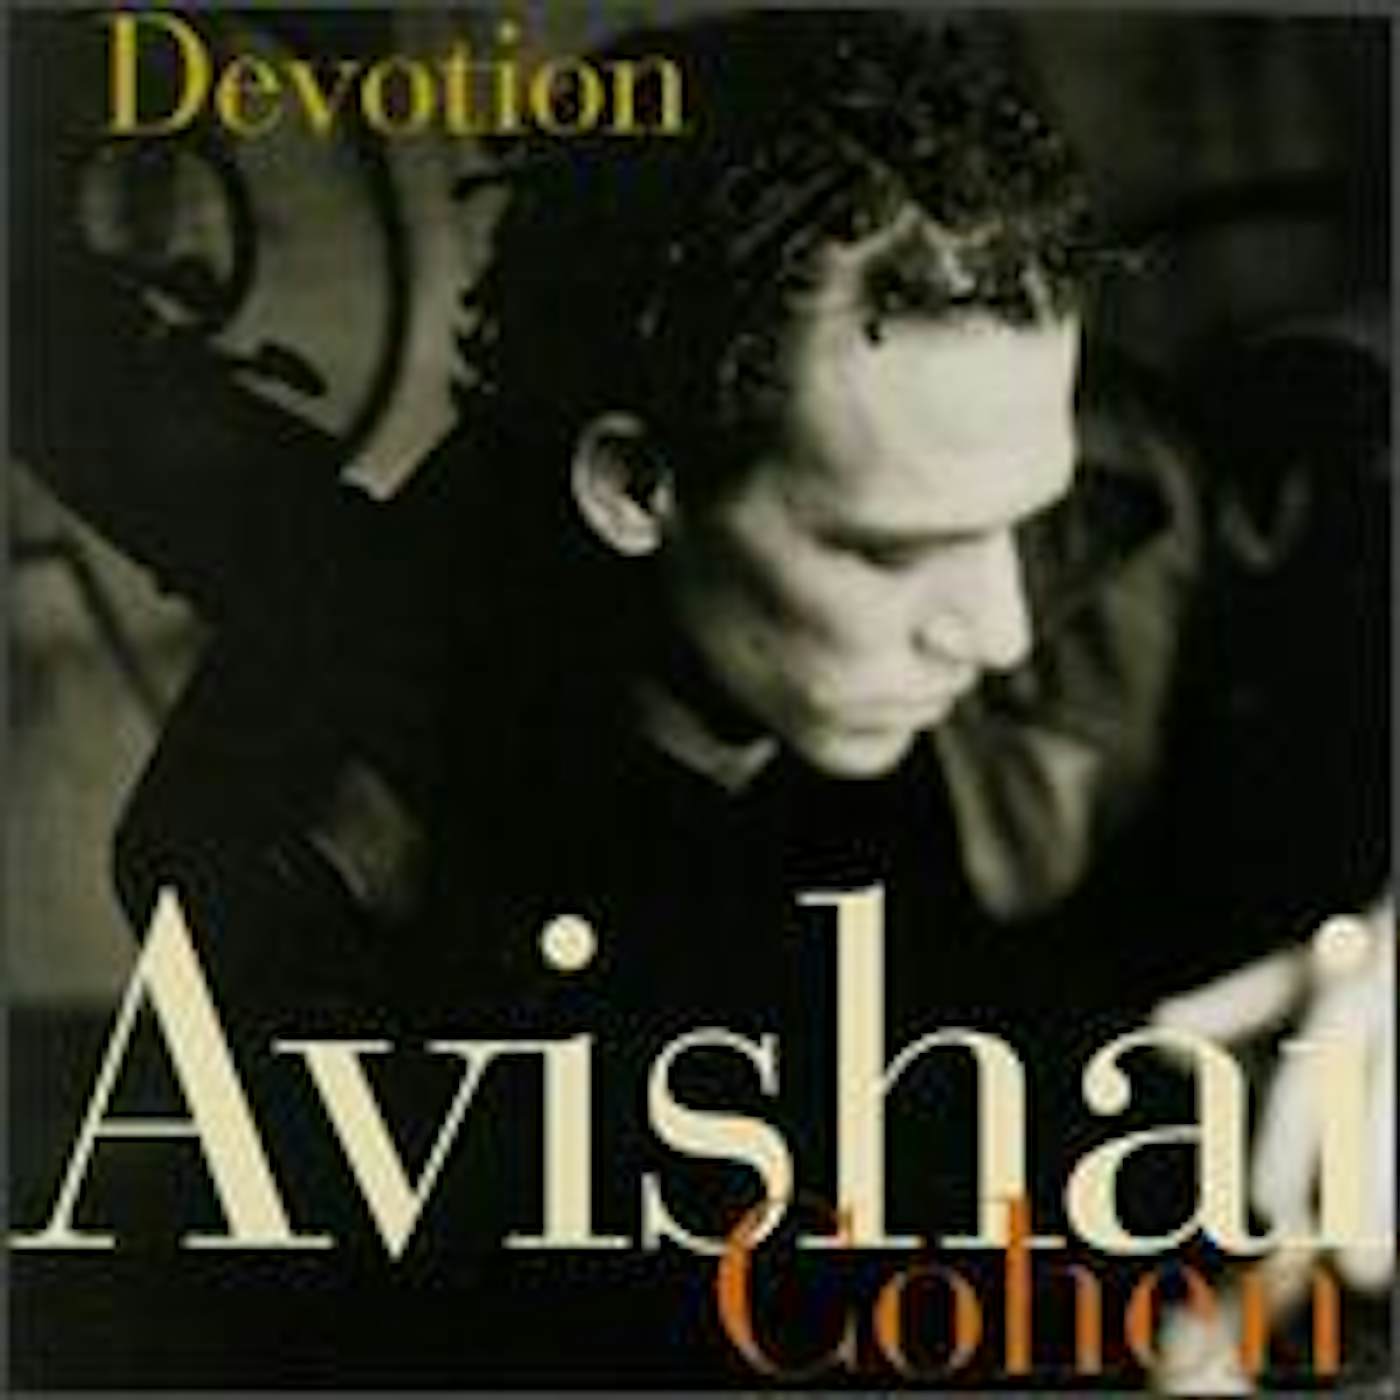 Avishai Cohen DEVOTION CD